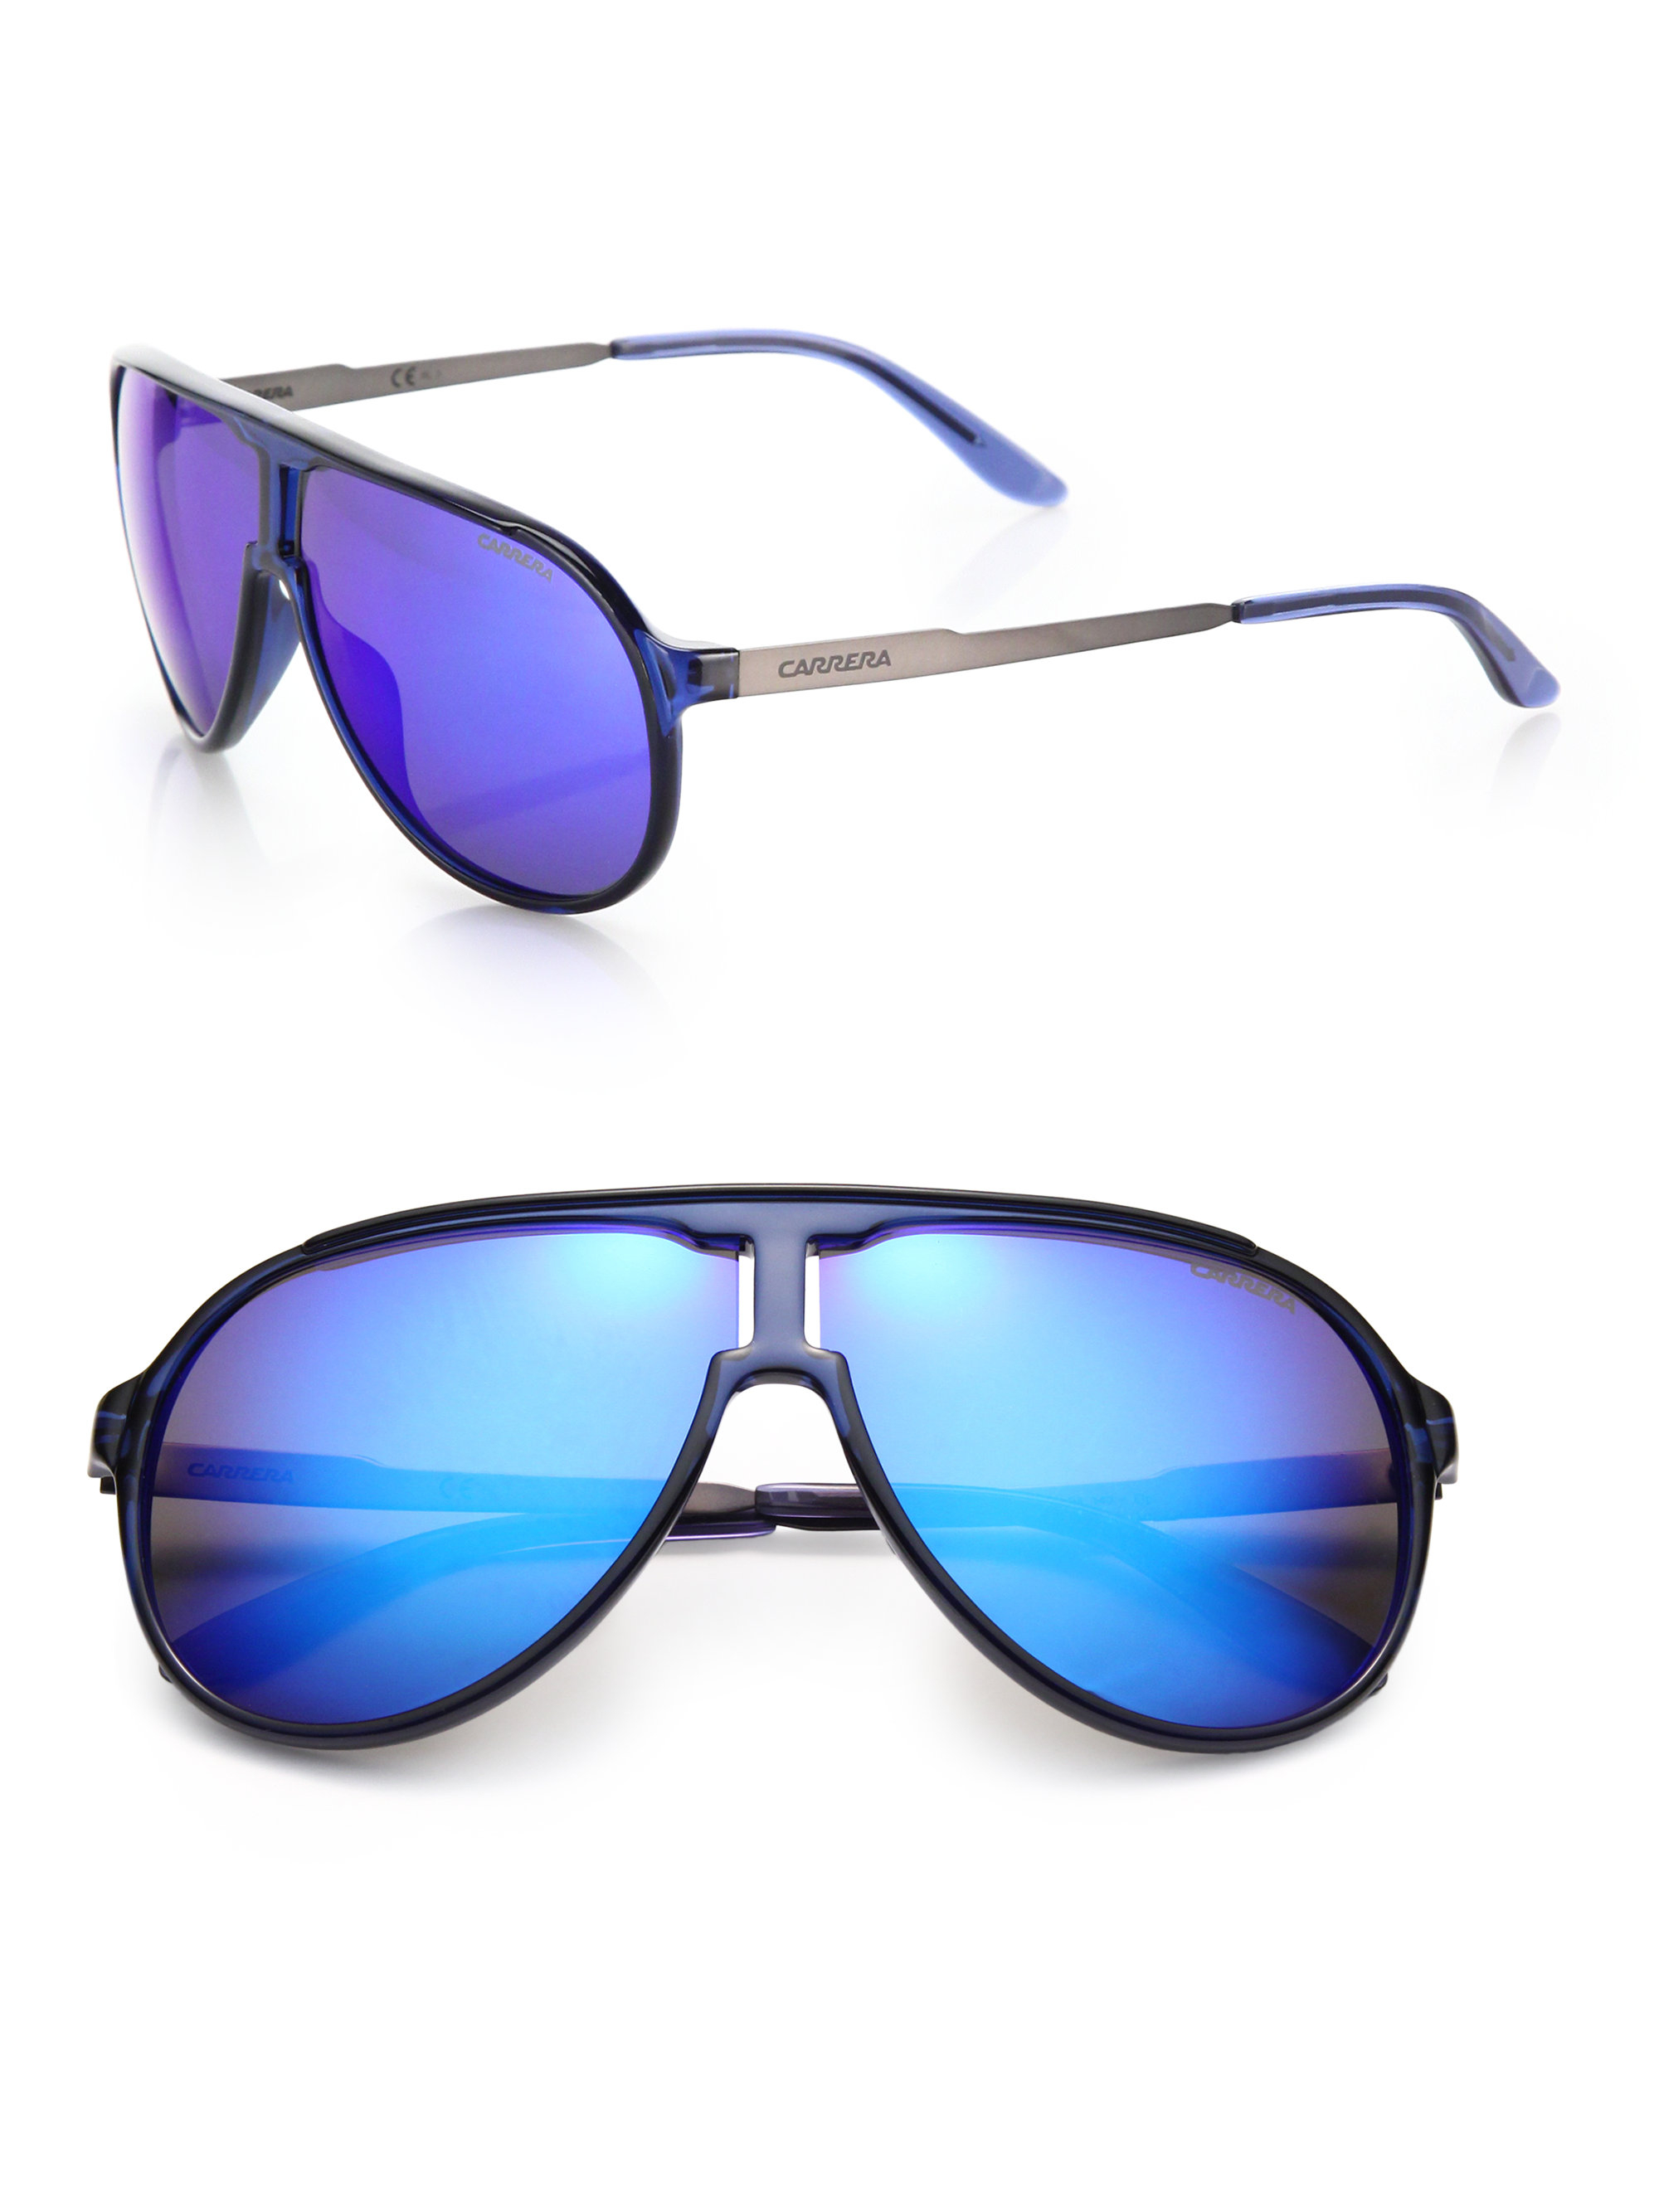 Mens Blue Lens Aviator Sunglasses | www.tapdance.org